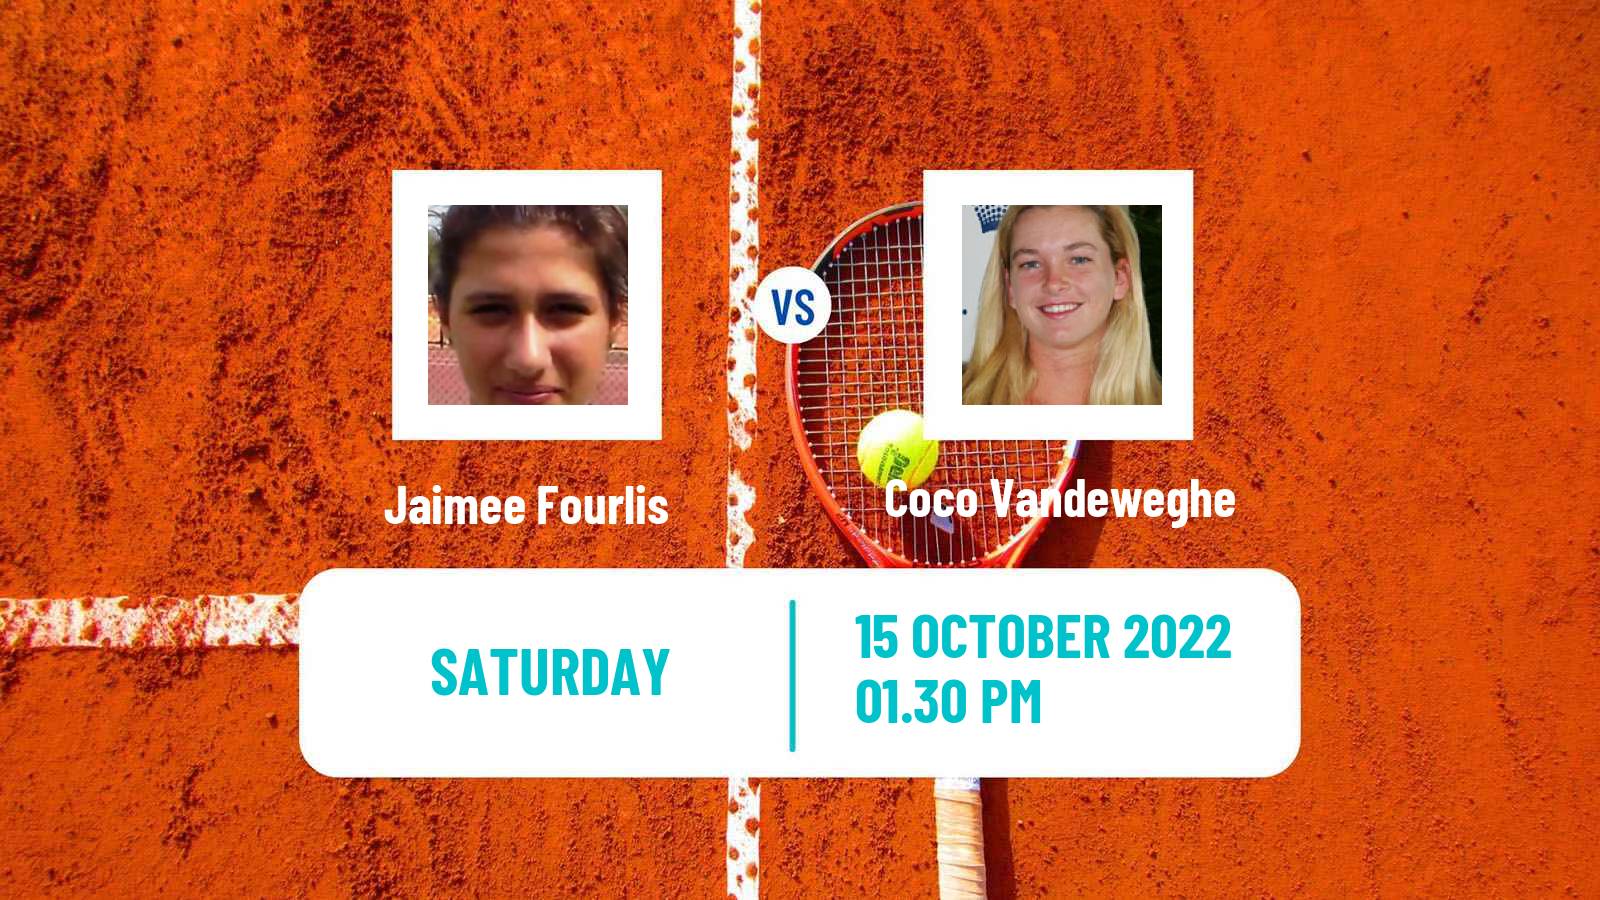 Tennis WTA Guadalajara 2 Jaimee Fourlis - Coco Vandeweghe